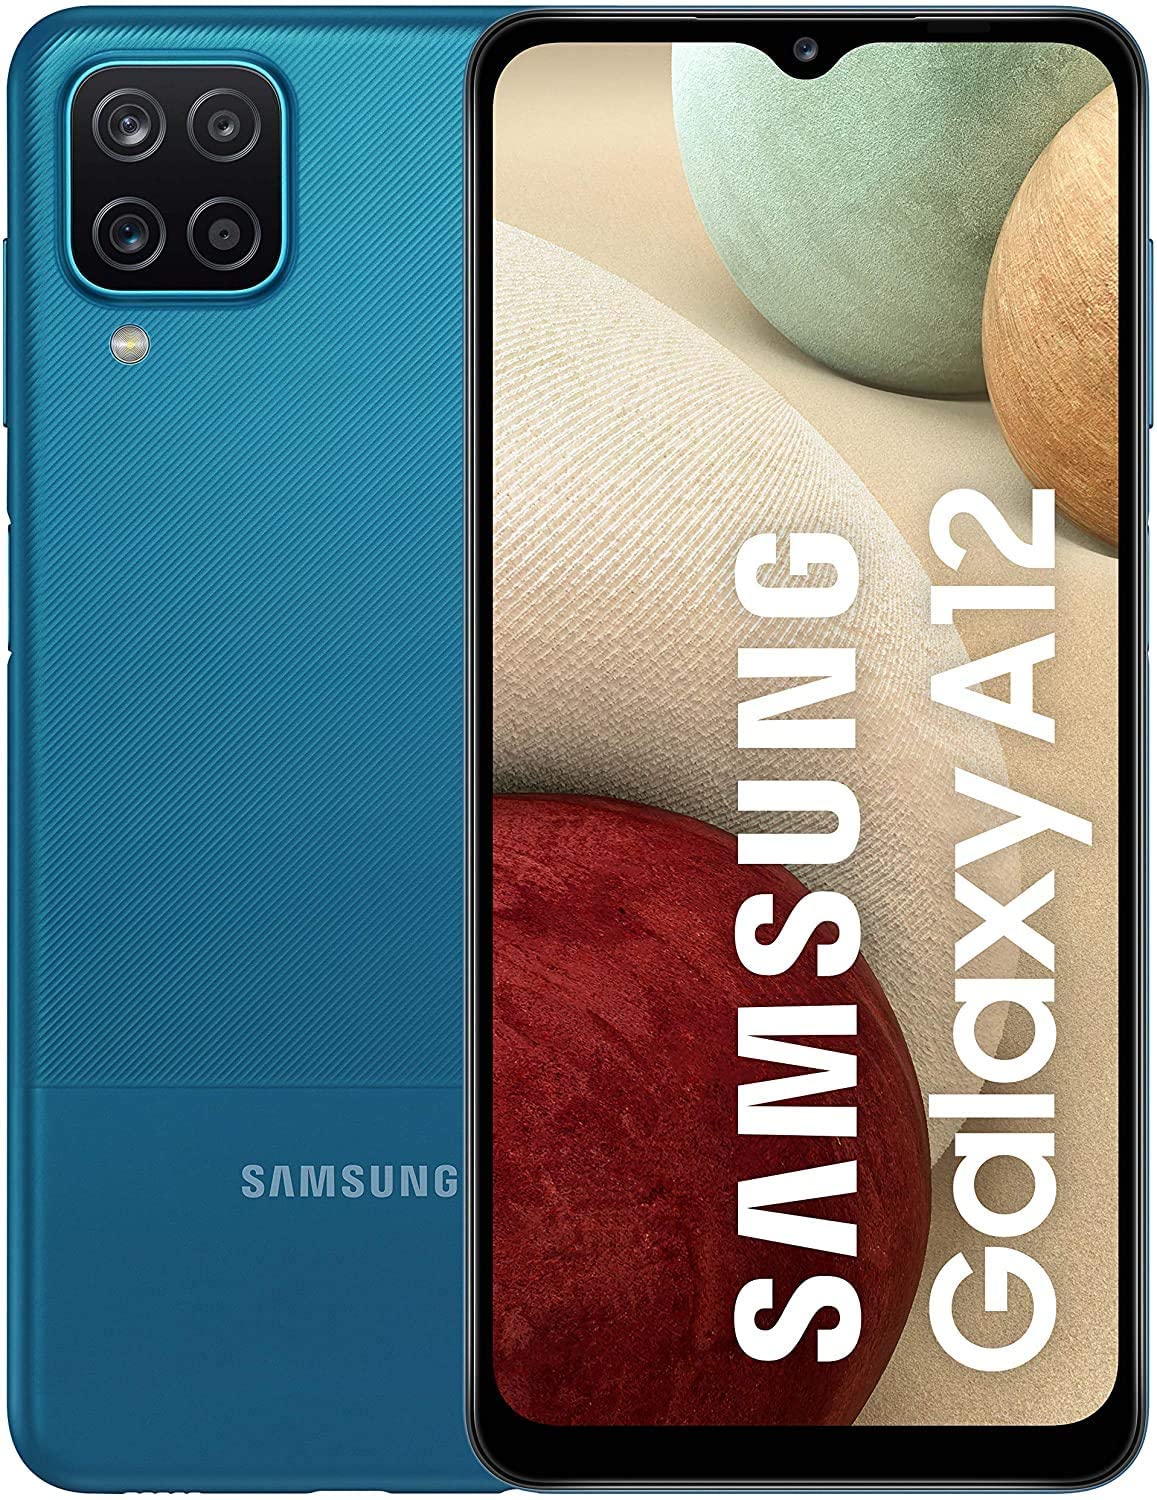 scramble fætter filosofisk Samsung Galaxy A12 Dual Sim, 64GB, 4GB RAM, 4G LTE – Electronic House